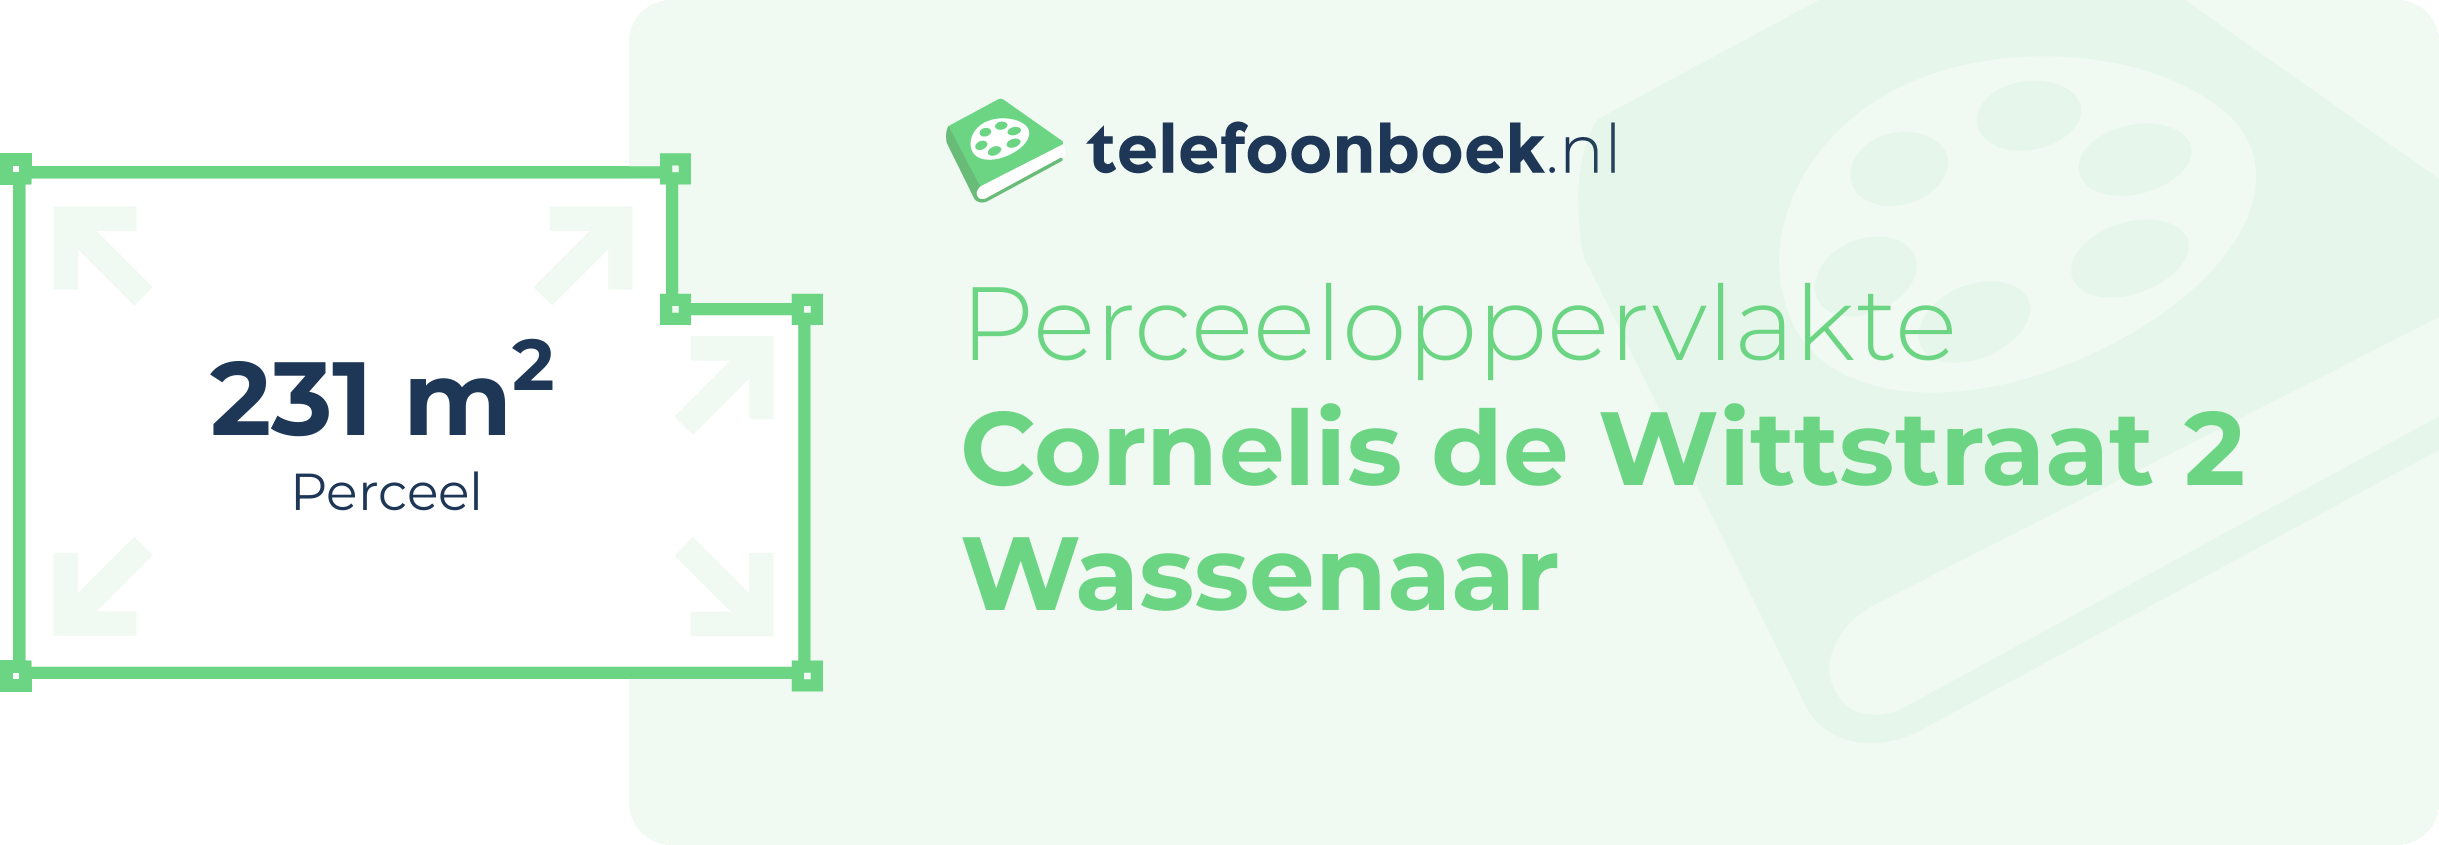 Perceeloppervlakte Cornelis De Wittstraat 2 Wassenaar